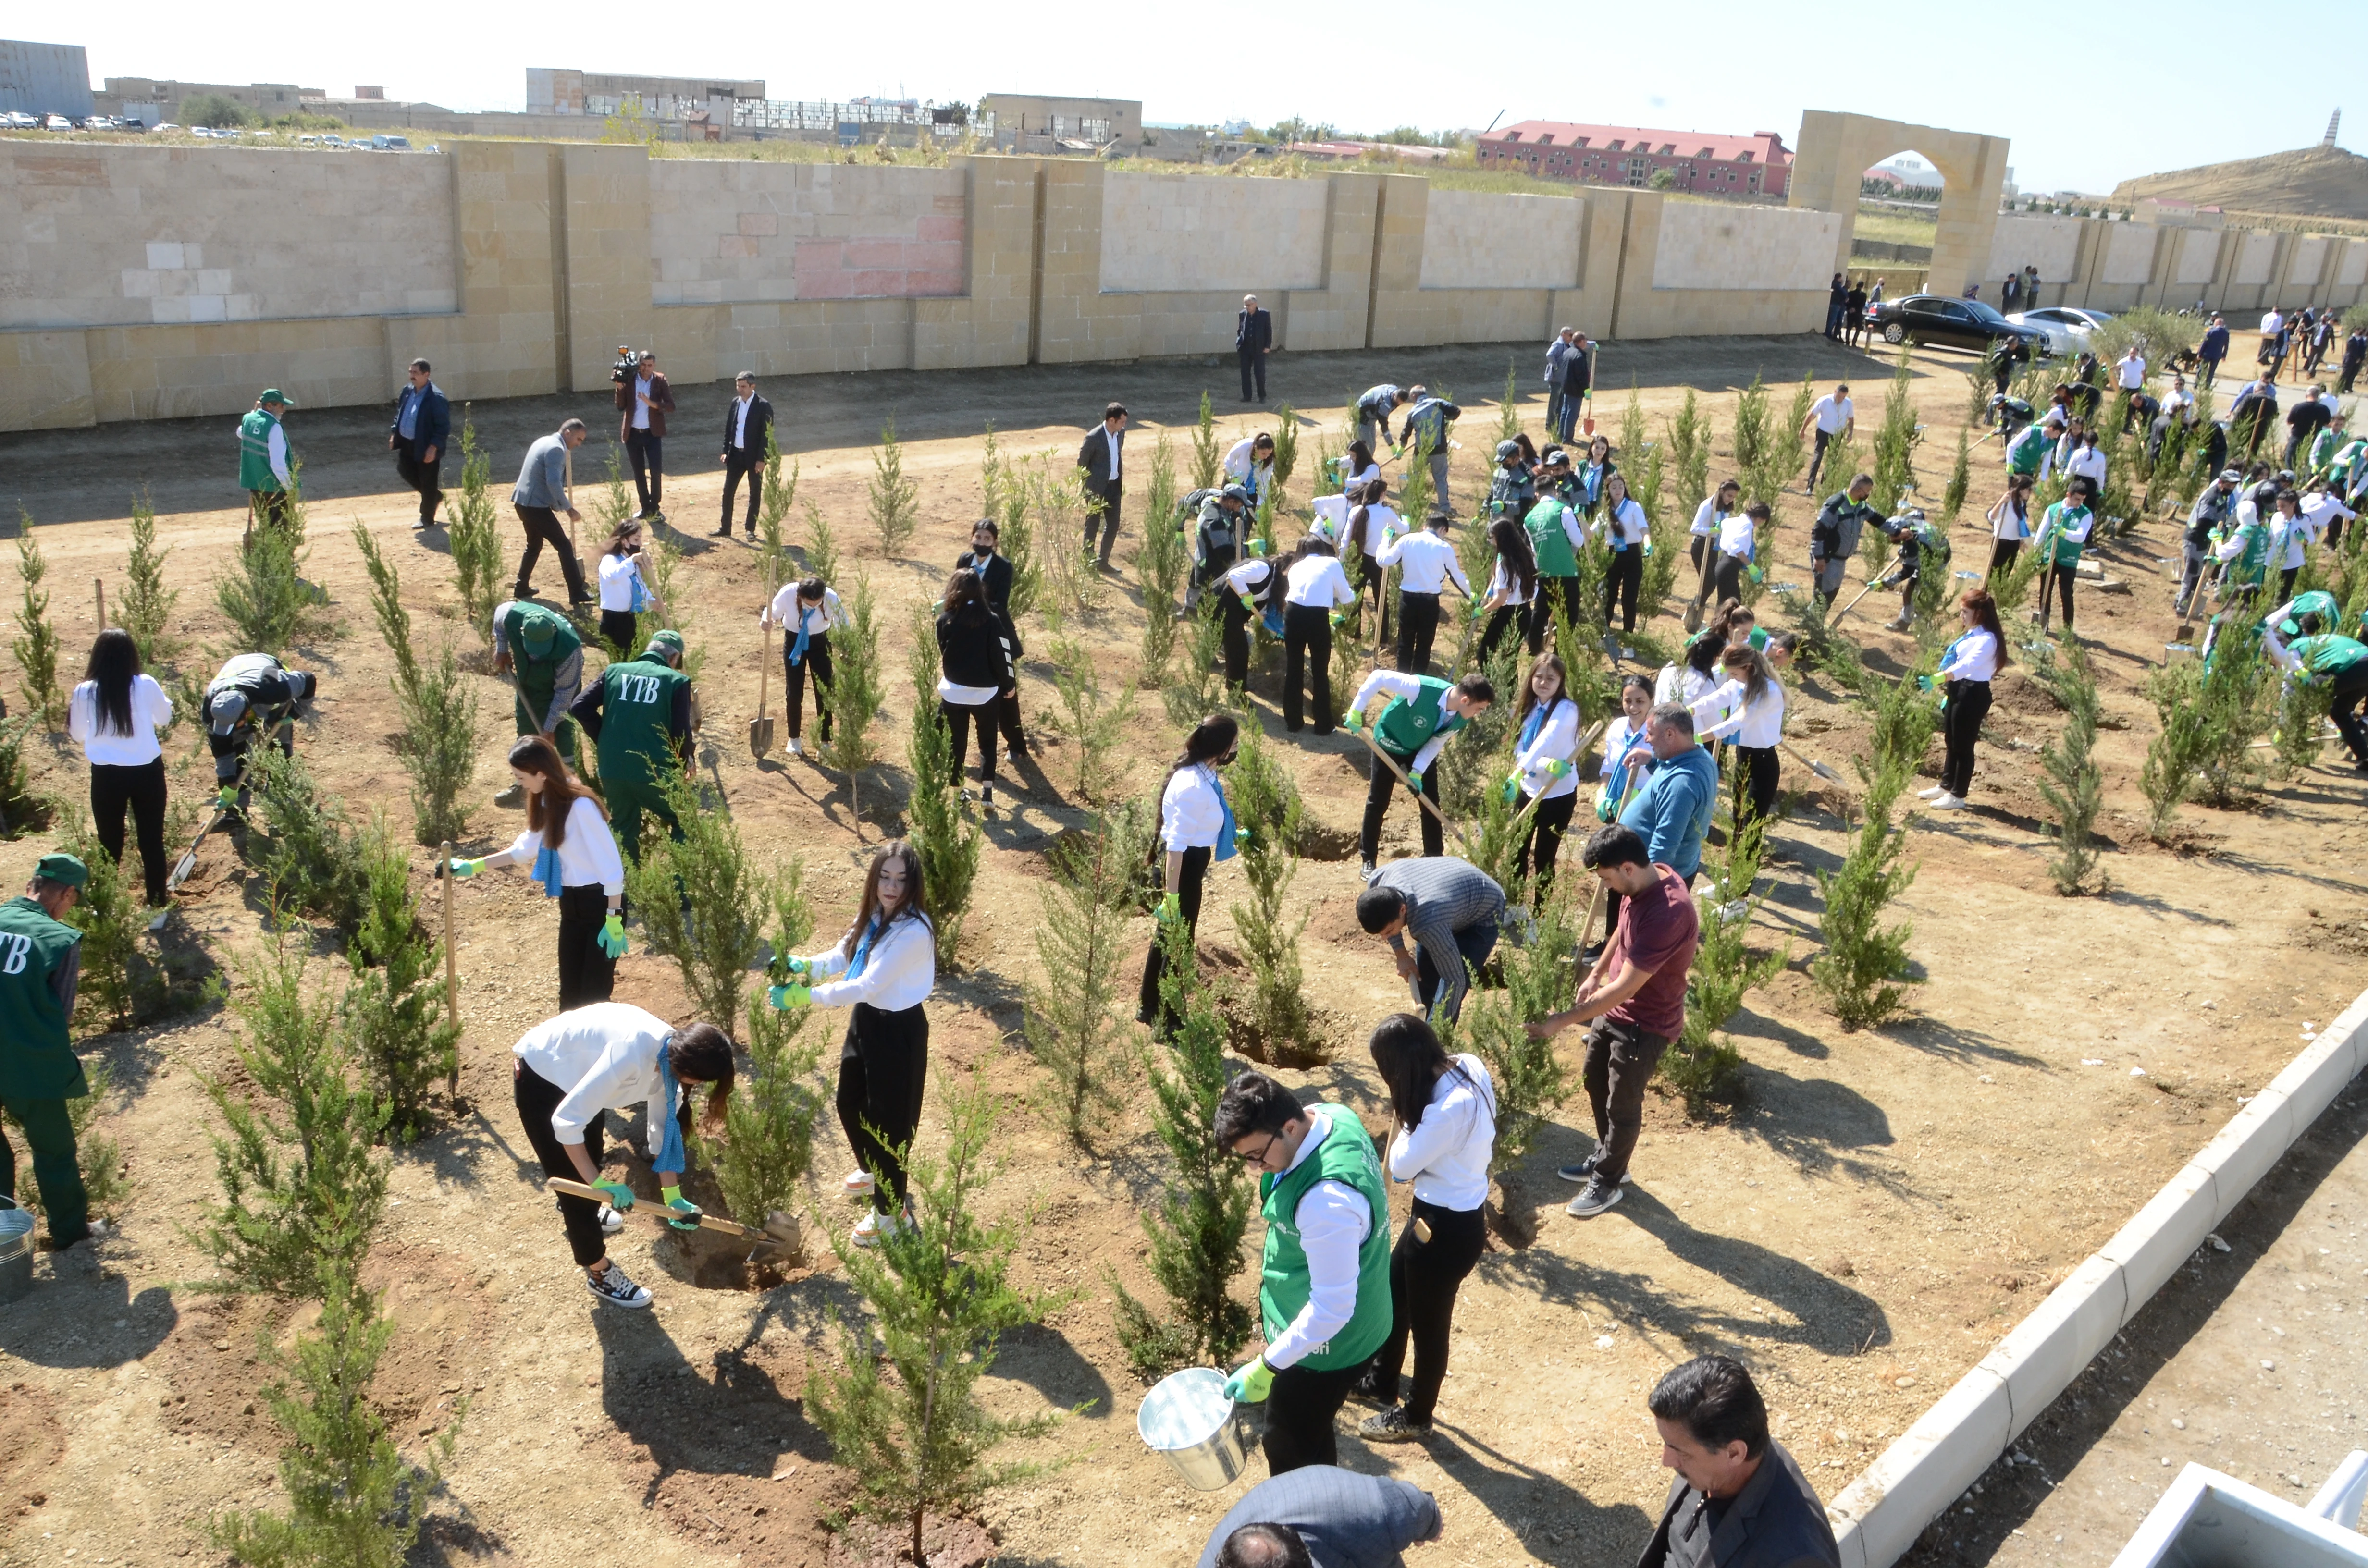 В Баку прошла акция по посадке деревьев, посвященная 27 сентябрю - Дню Памяти